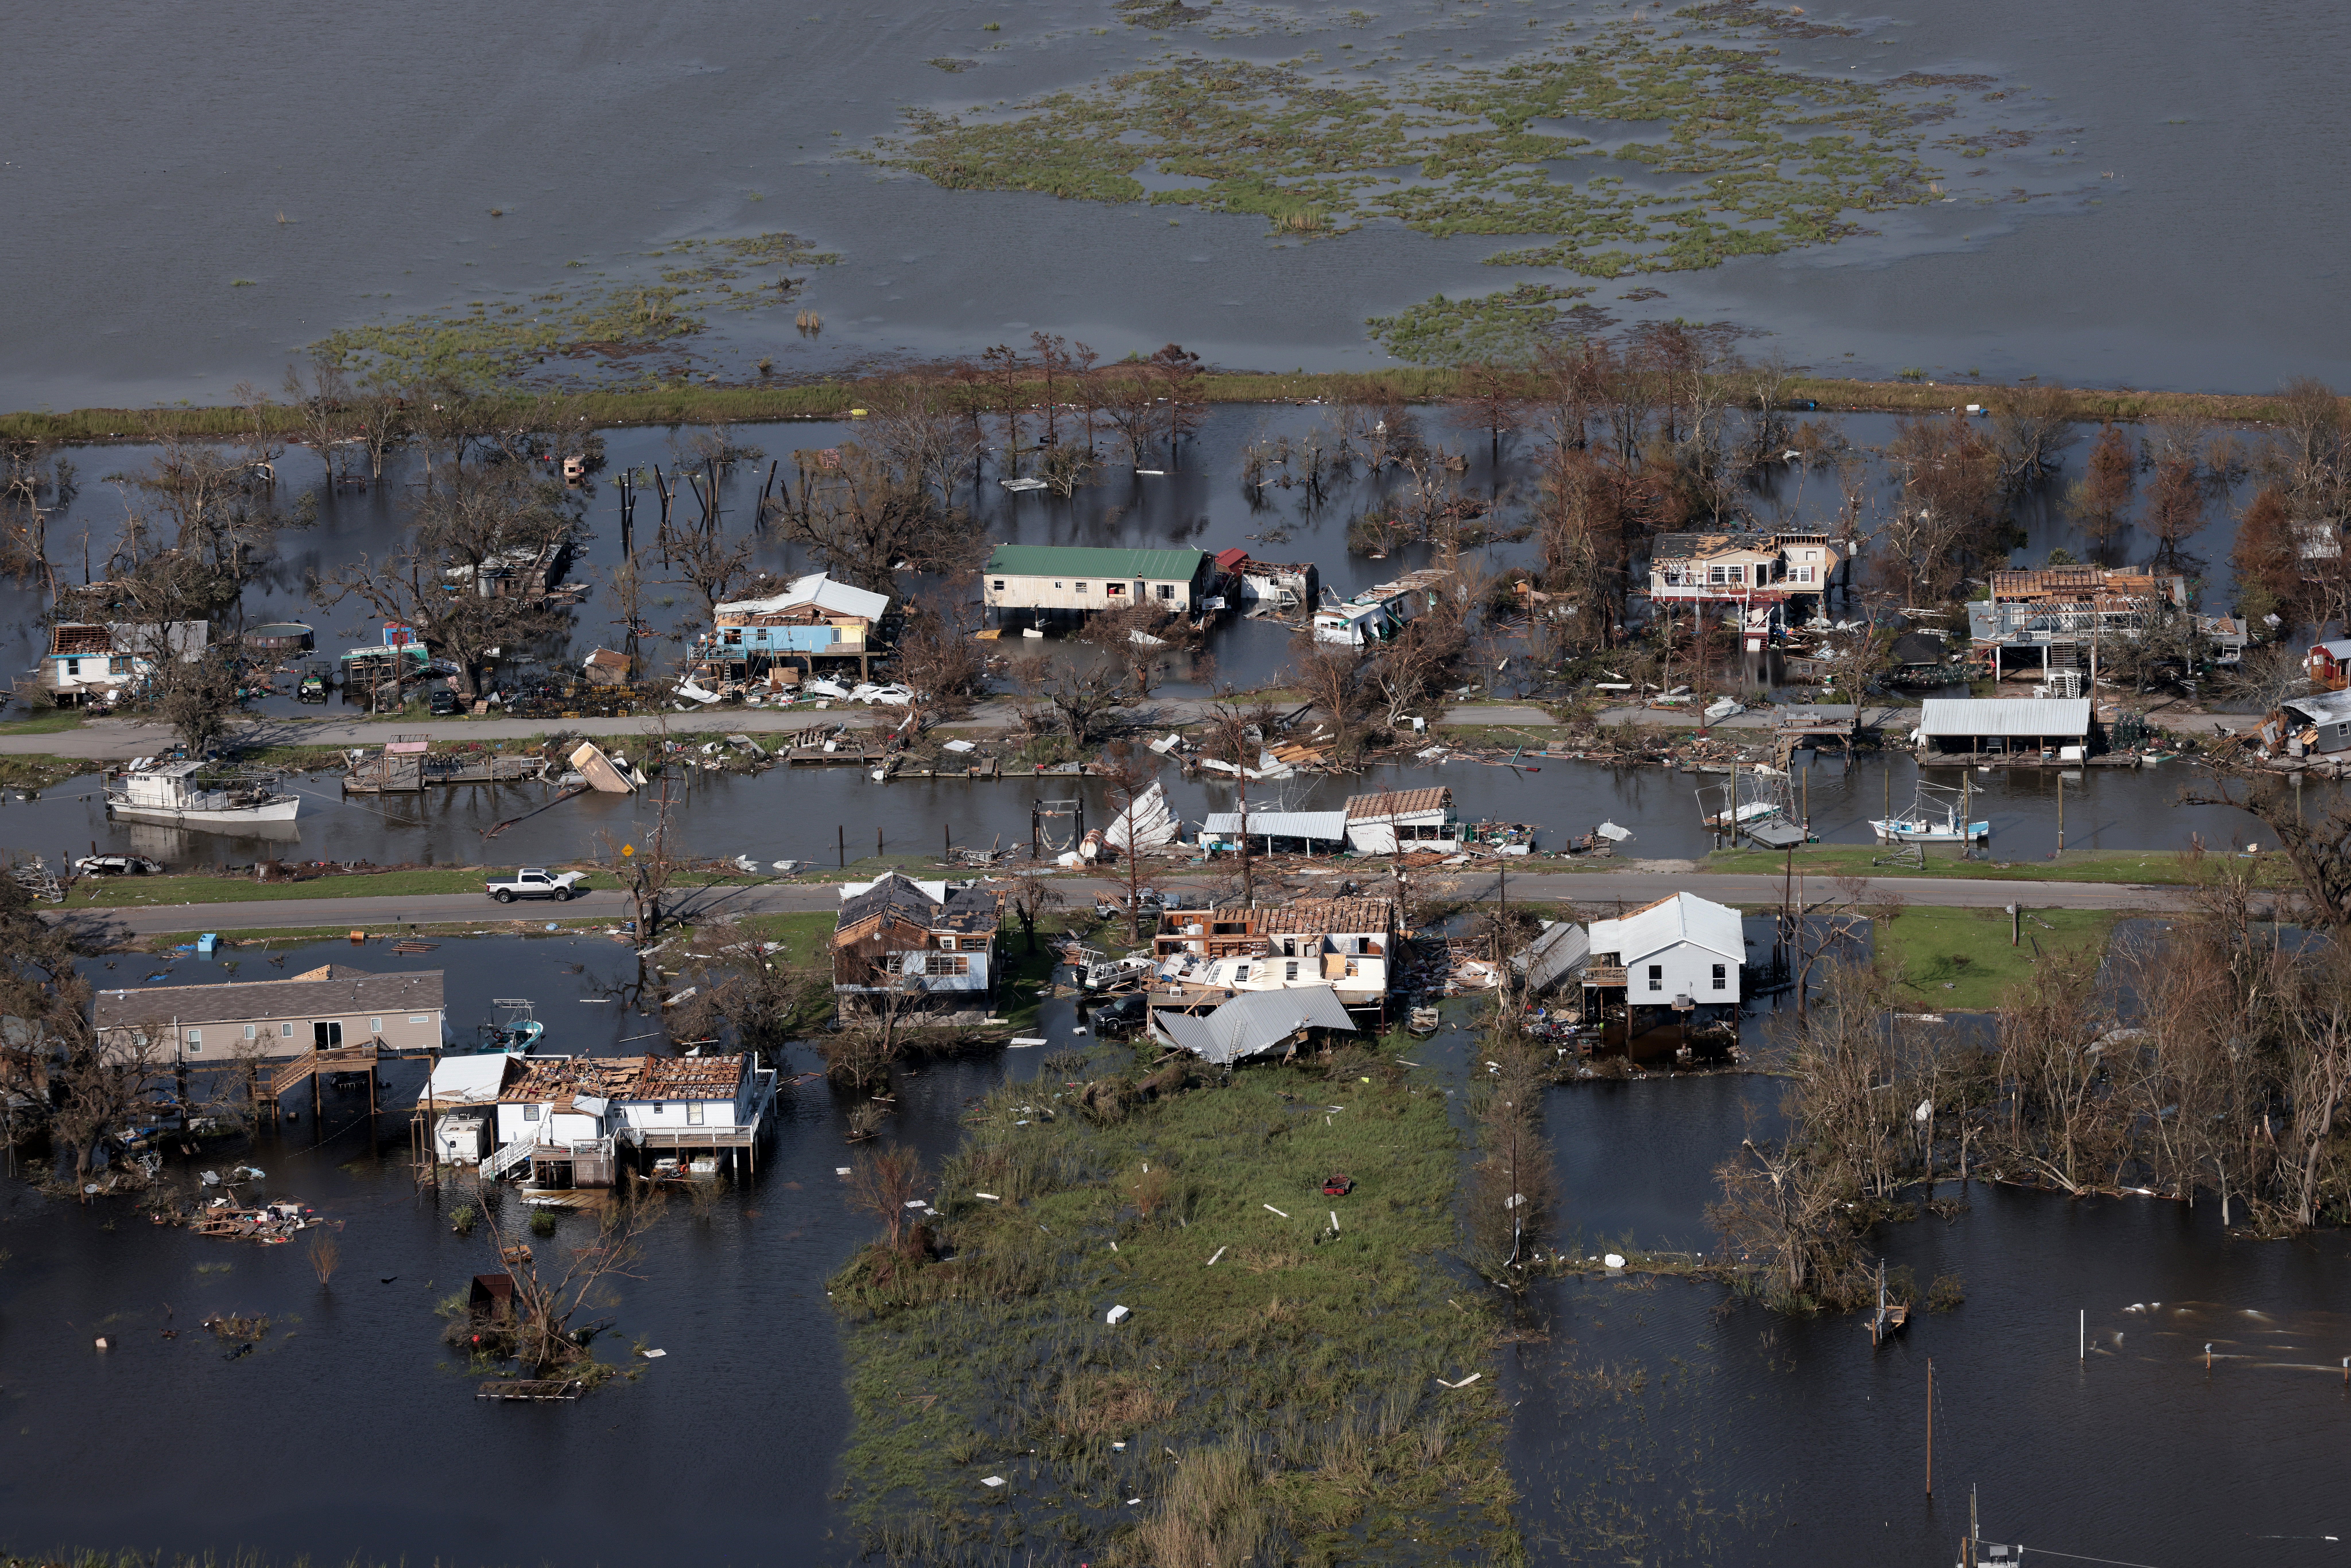 La comunidad de Pointe-Aux-Chenes, Luisiana, vista dos días después de que el huracán Ida tocara tierra.